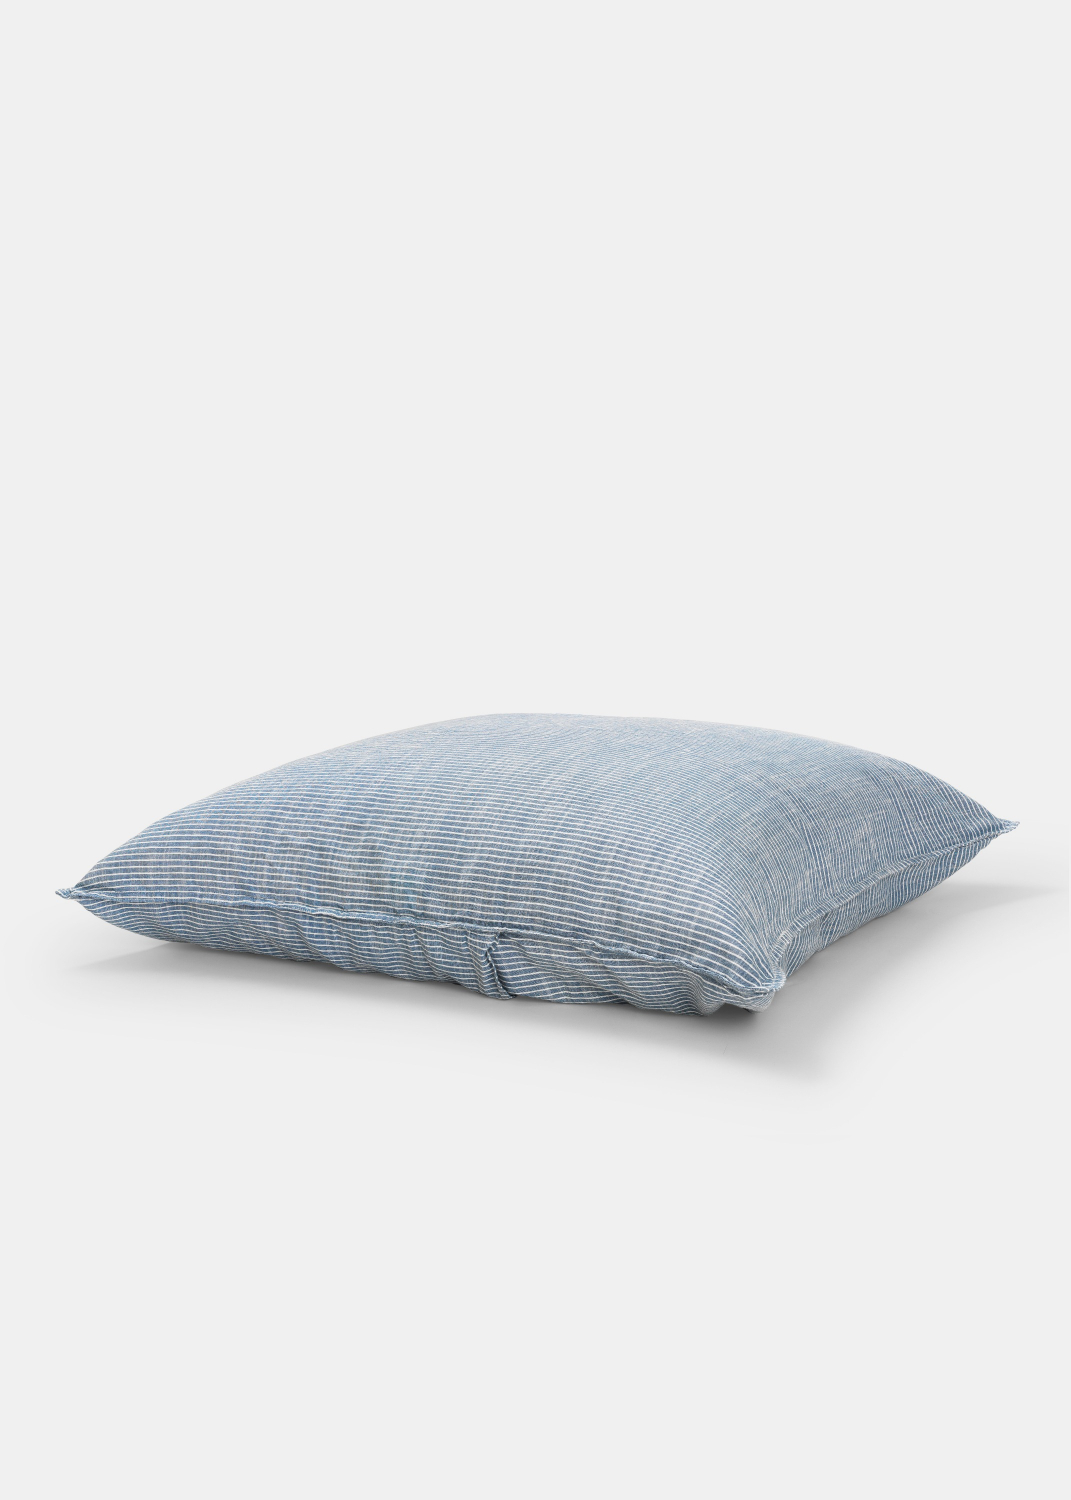 Bedlinen - Duvet Set Striped - Single XL (140x220 + pillow case)